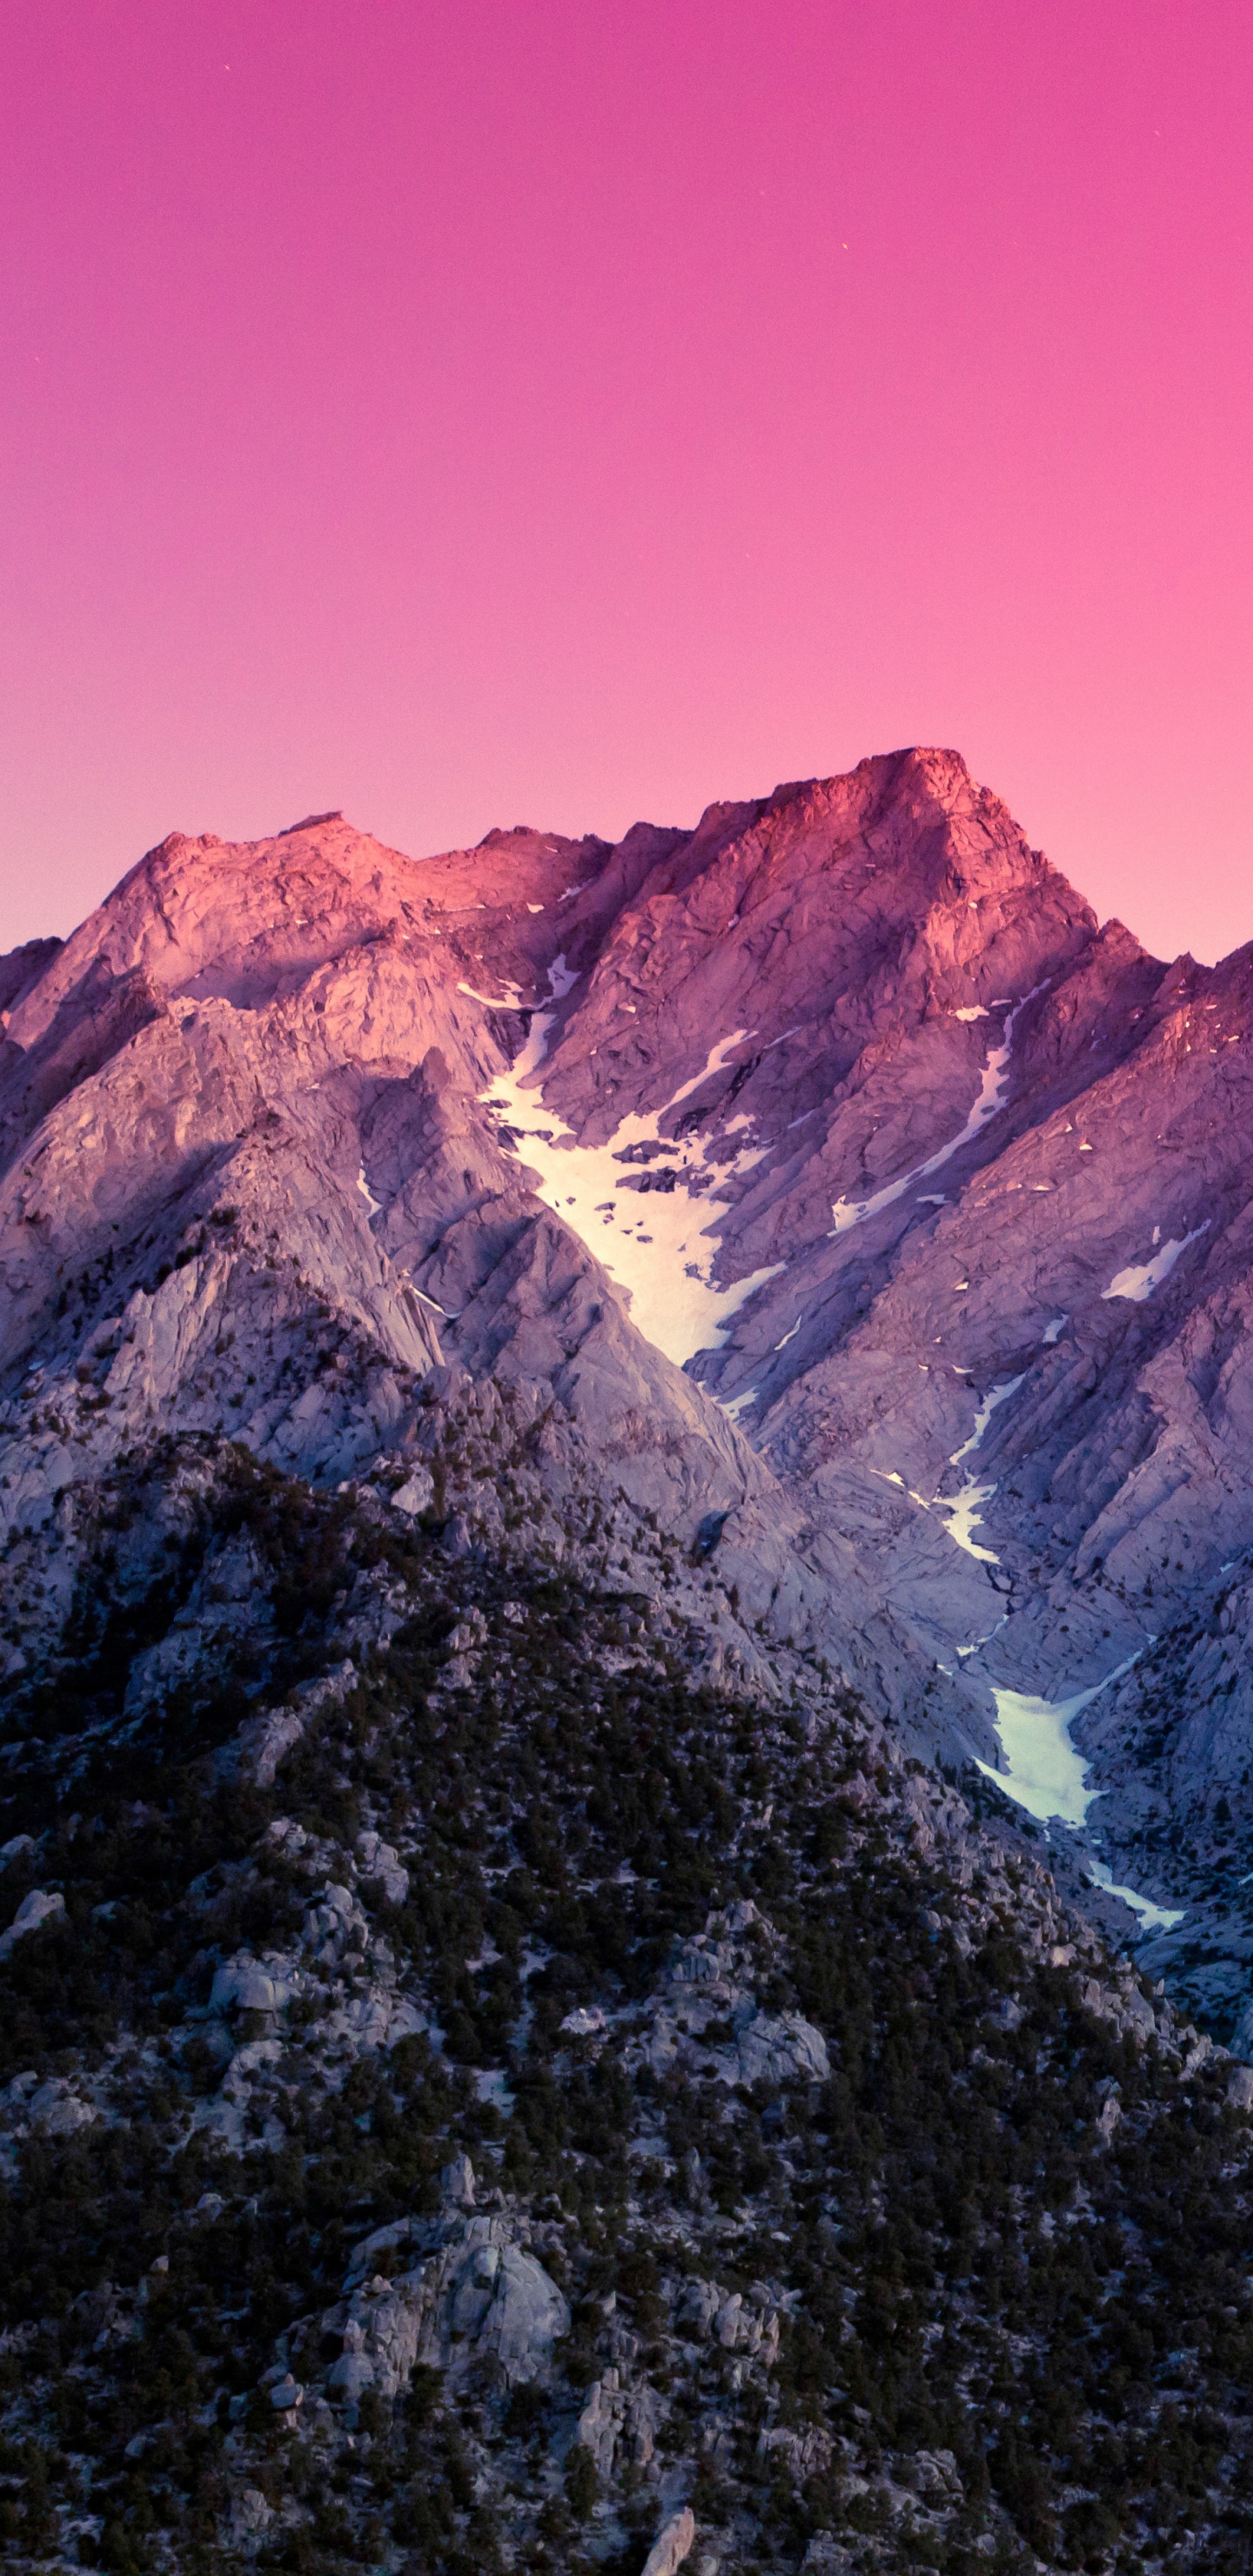 Montaña Rocosa Marrón y Gris Bajo un Cielo Azul Durante el Día. Wallpaper in 1440x2960 Resolution